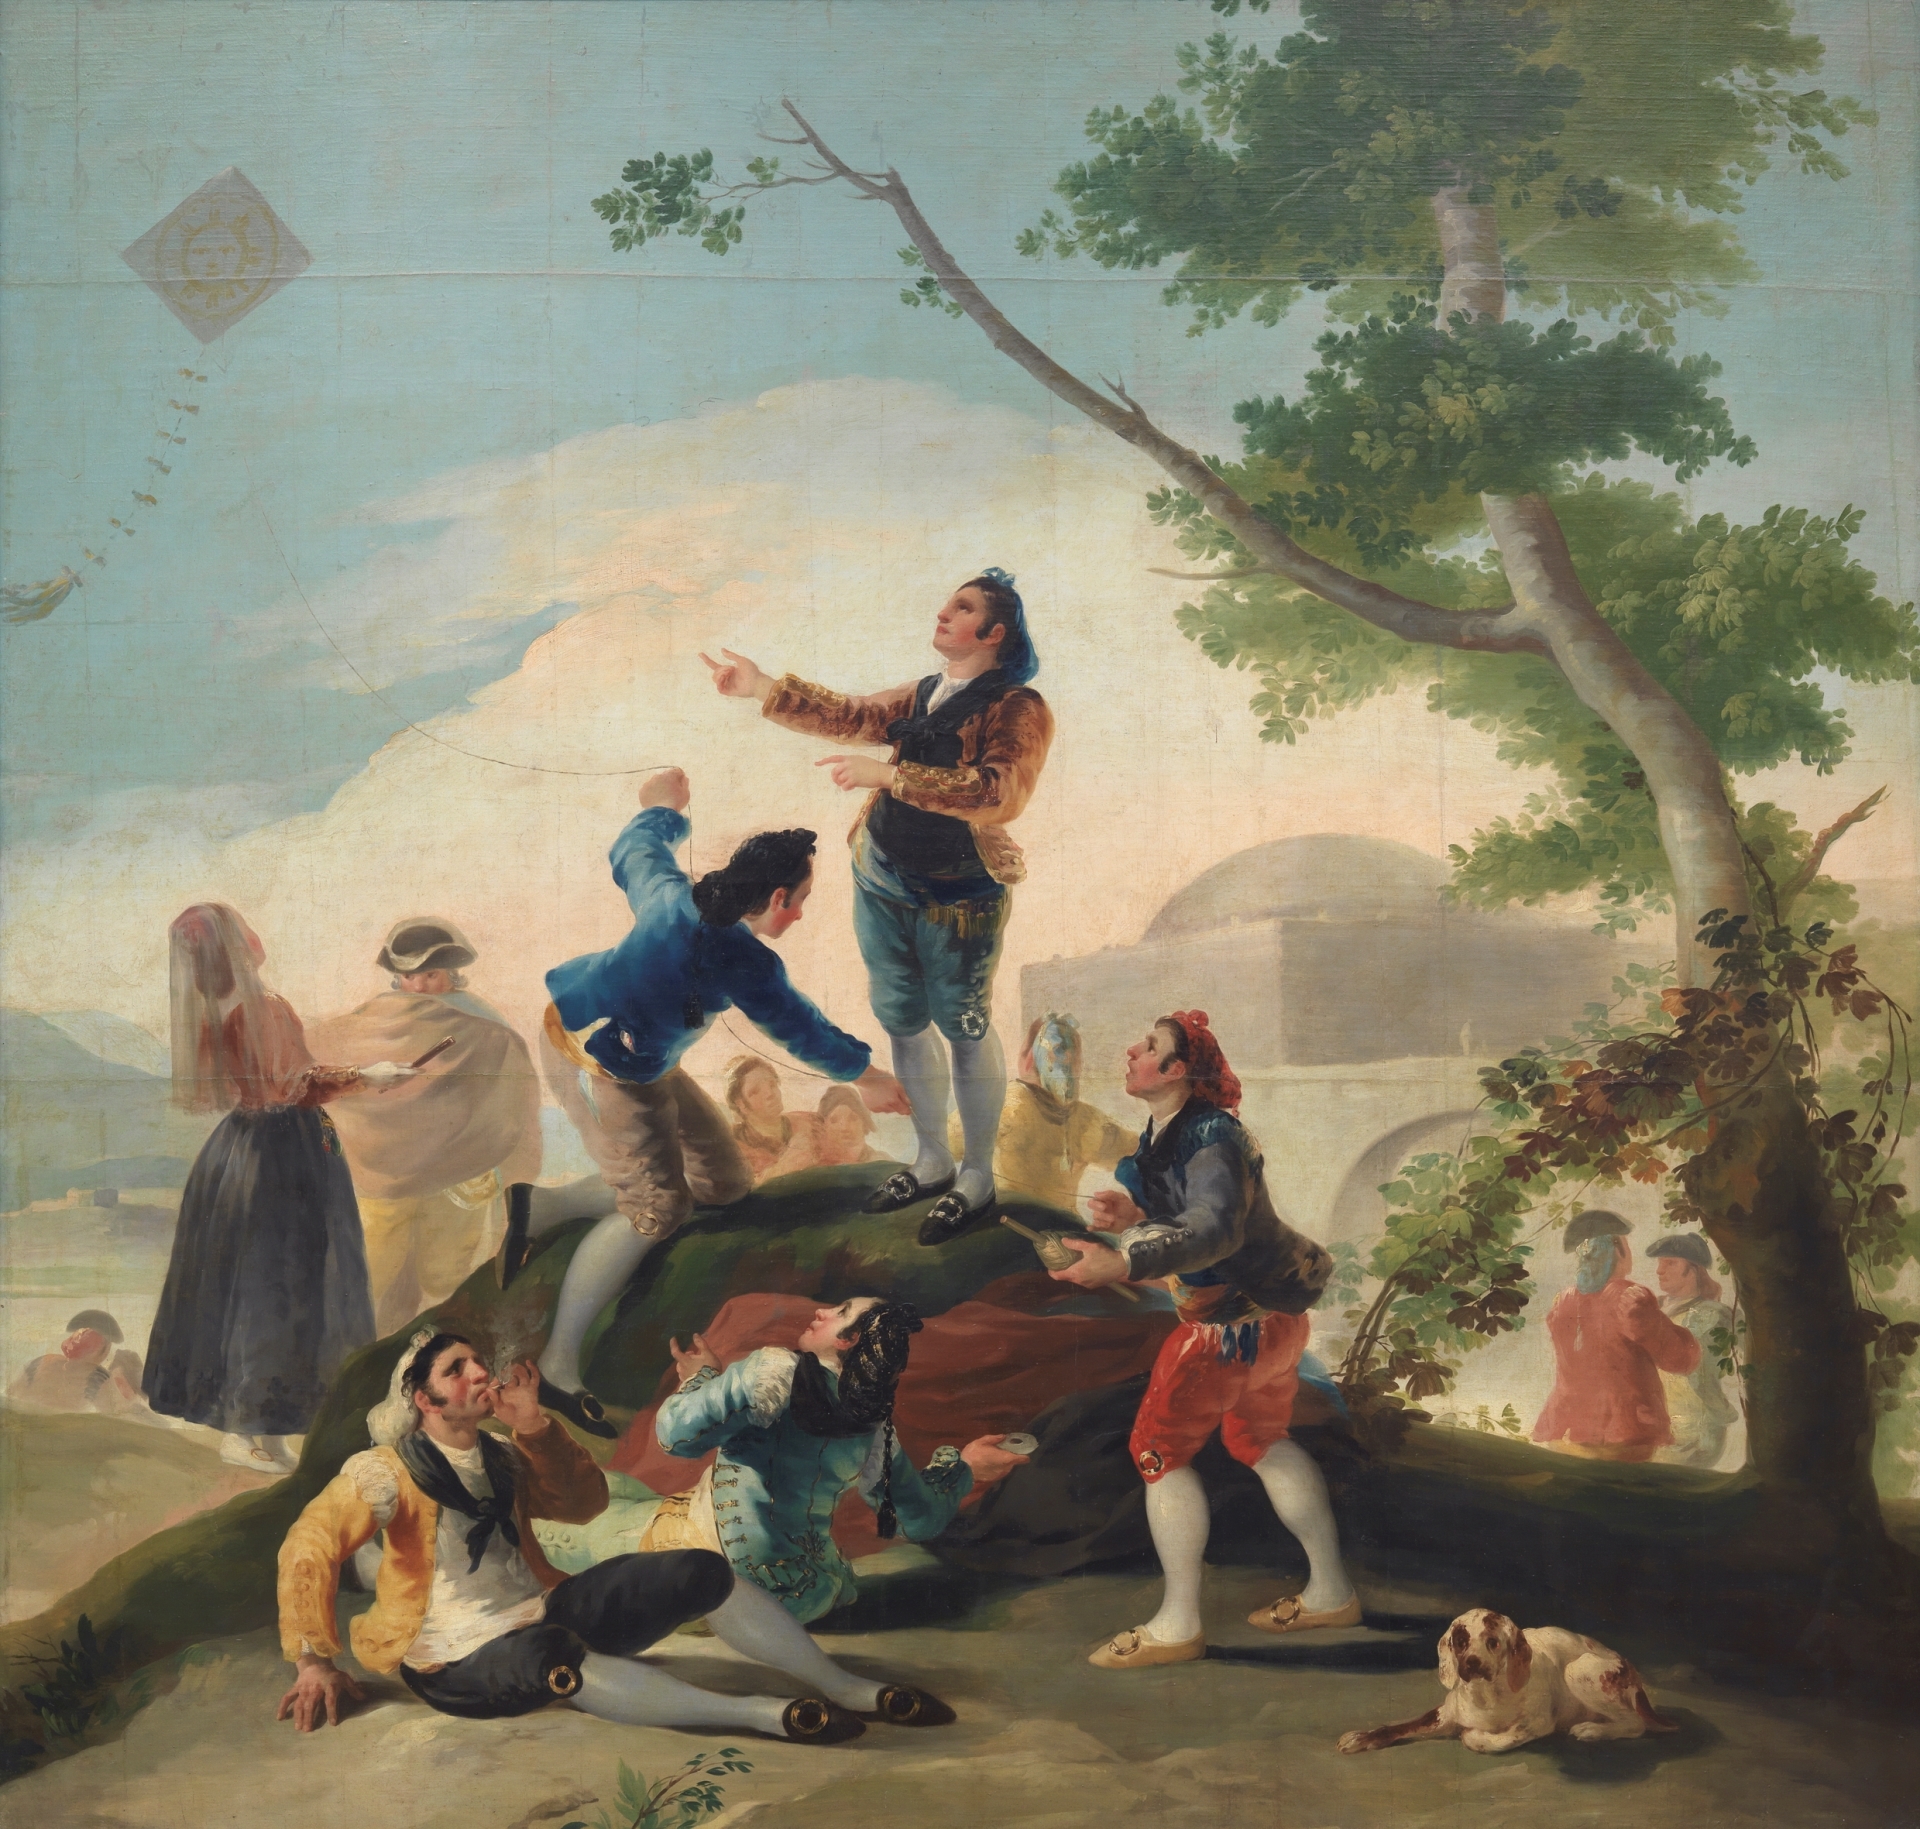 The Kite by Francisco Goya - 1777-1778 - 269 x 285 cm Museo del Prado